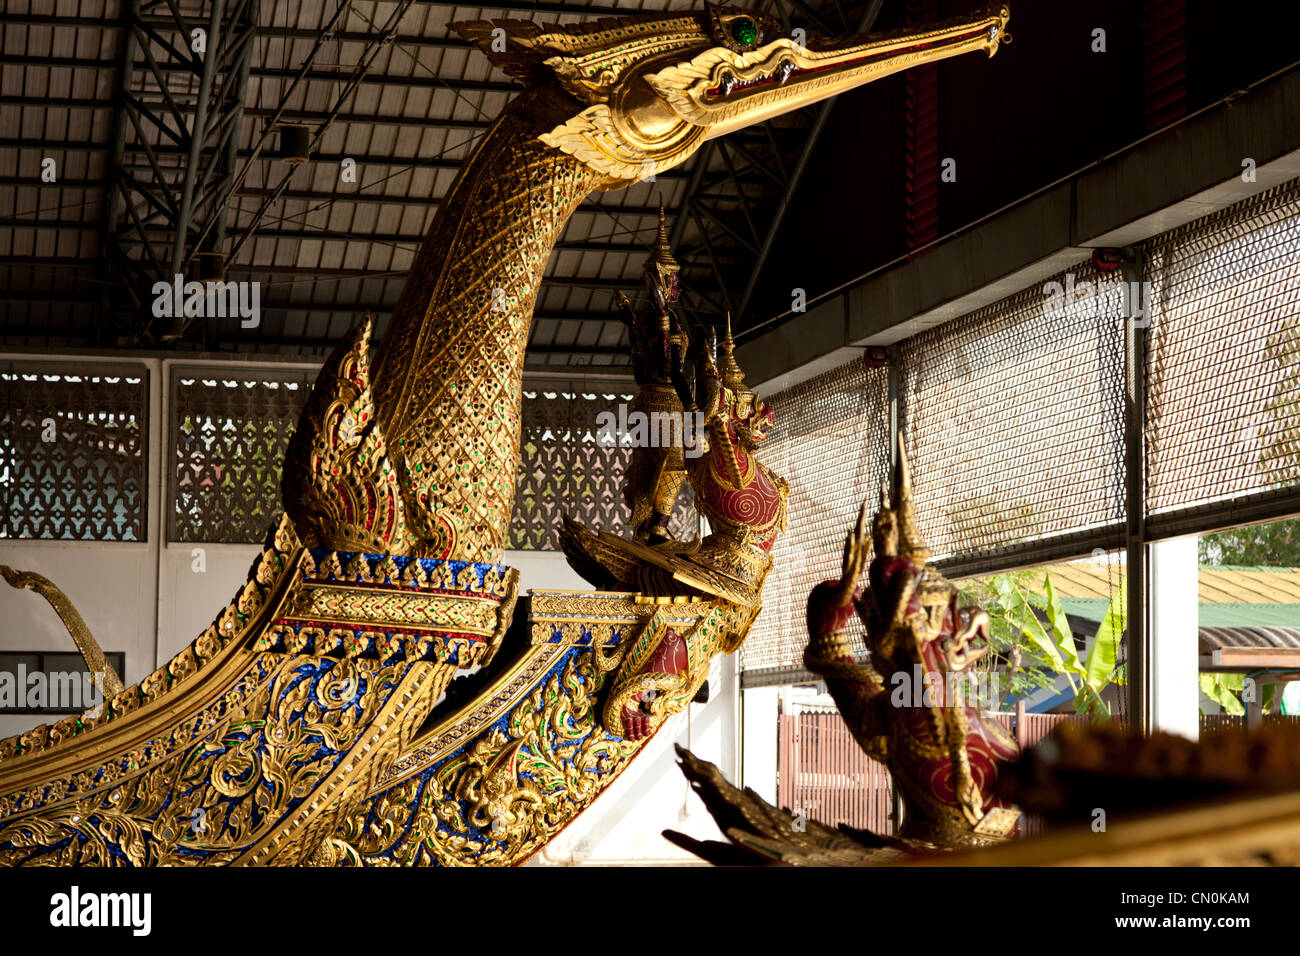 Dans le musée national de Royal Barges, un cygne-comme figure de proue de la barge personnelle du Roi de Thonburi (- Bangkok - Thaïlande)). Banque D'Images